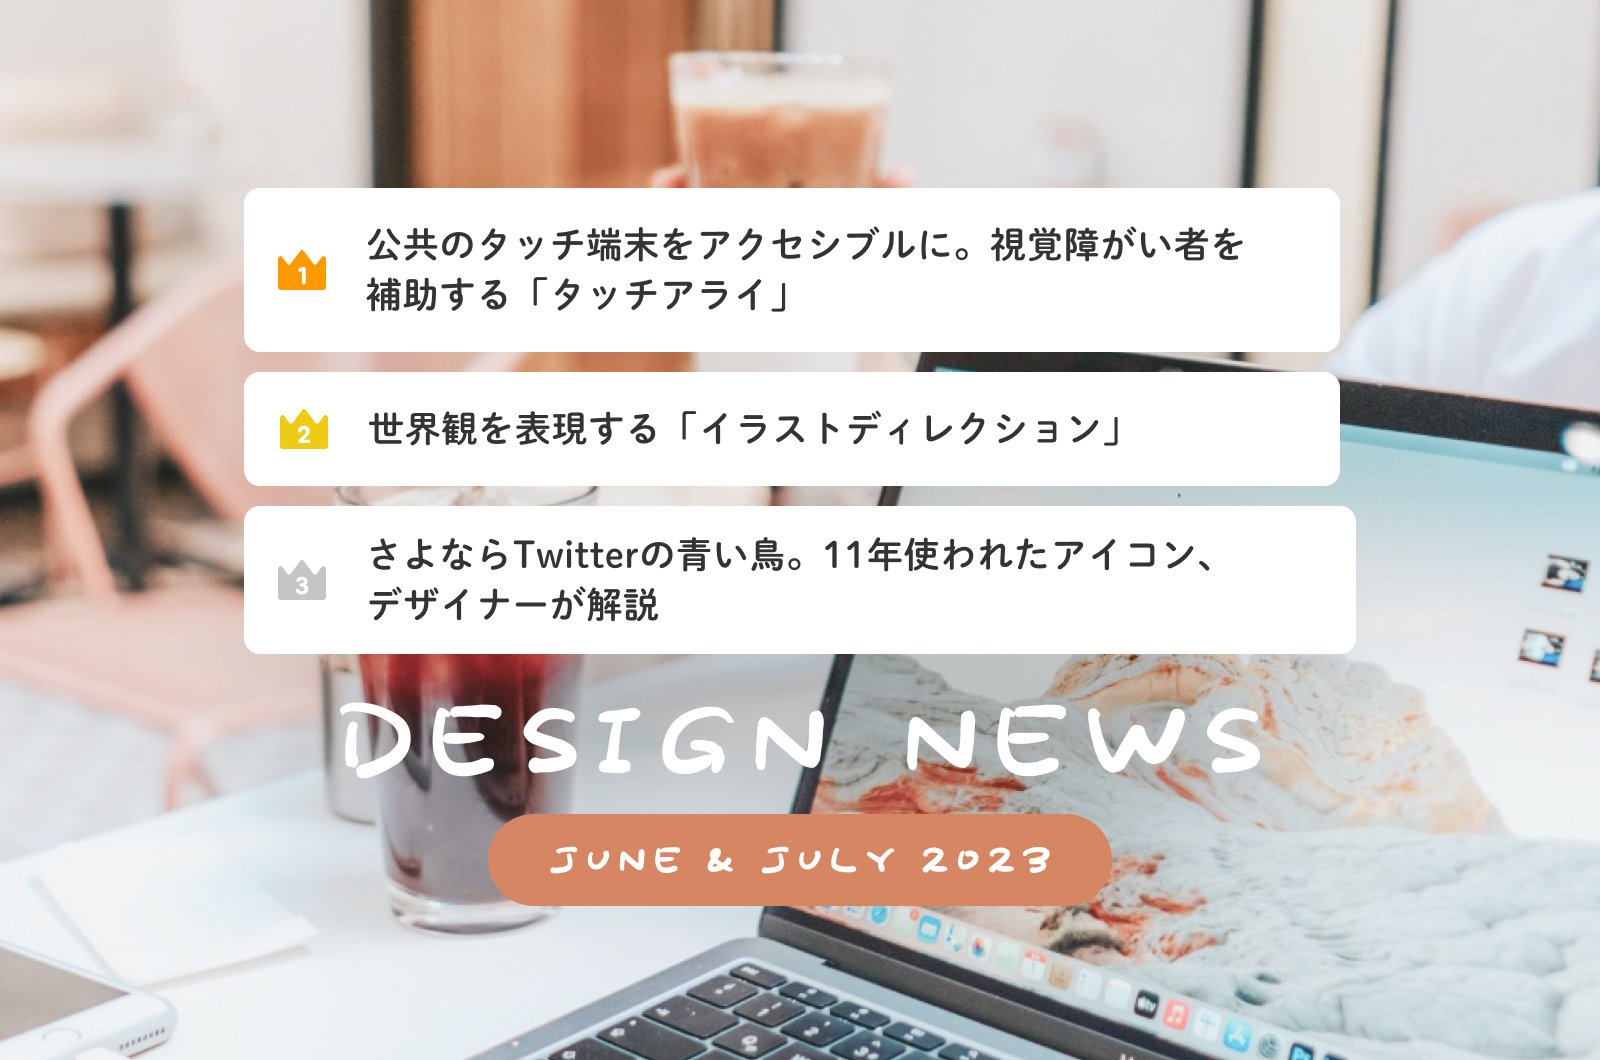 Design News (June & July 2023)